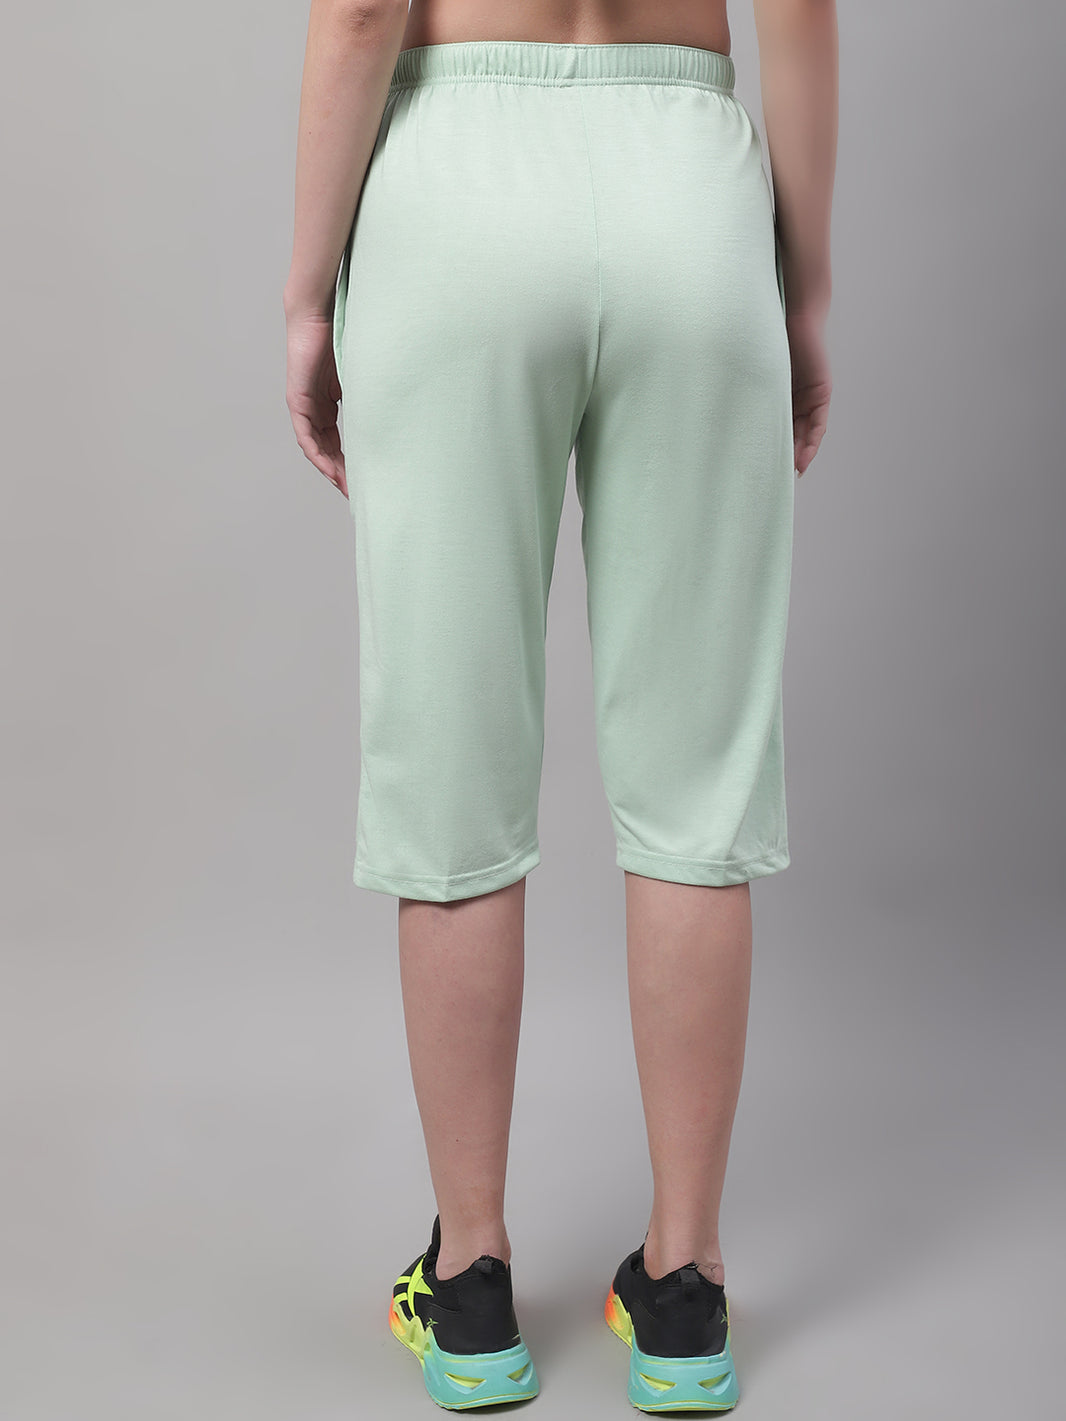 Vimal Jonney Light Green Regular fit Cotton Capri for Women